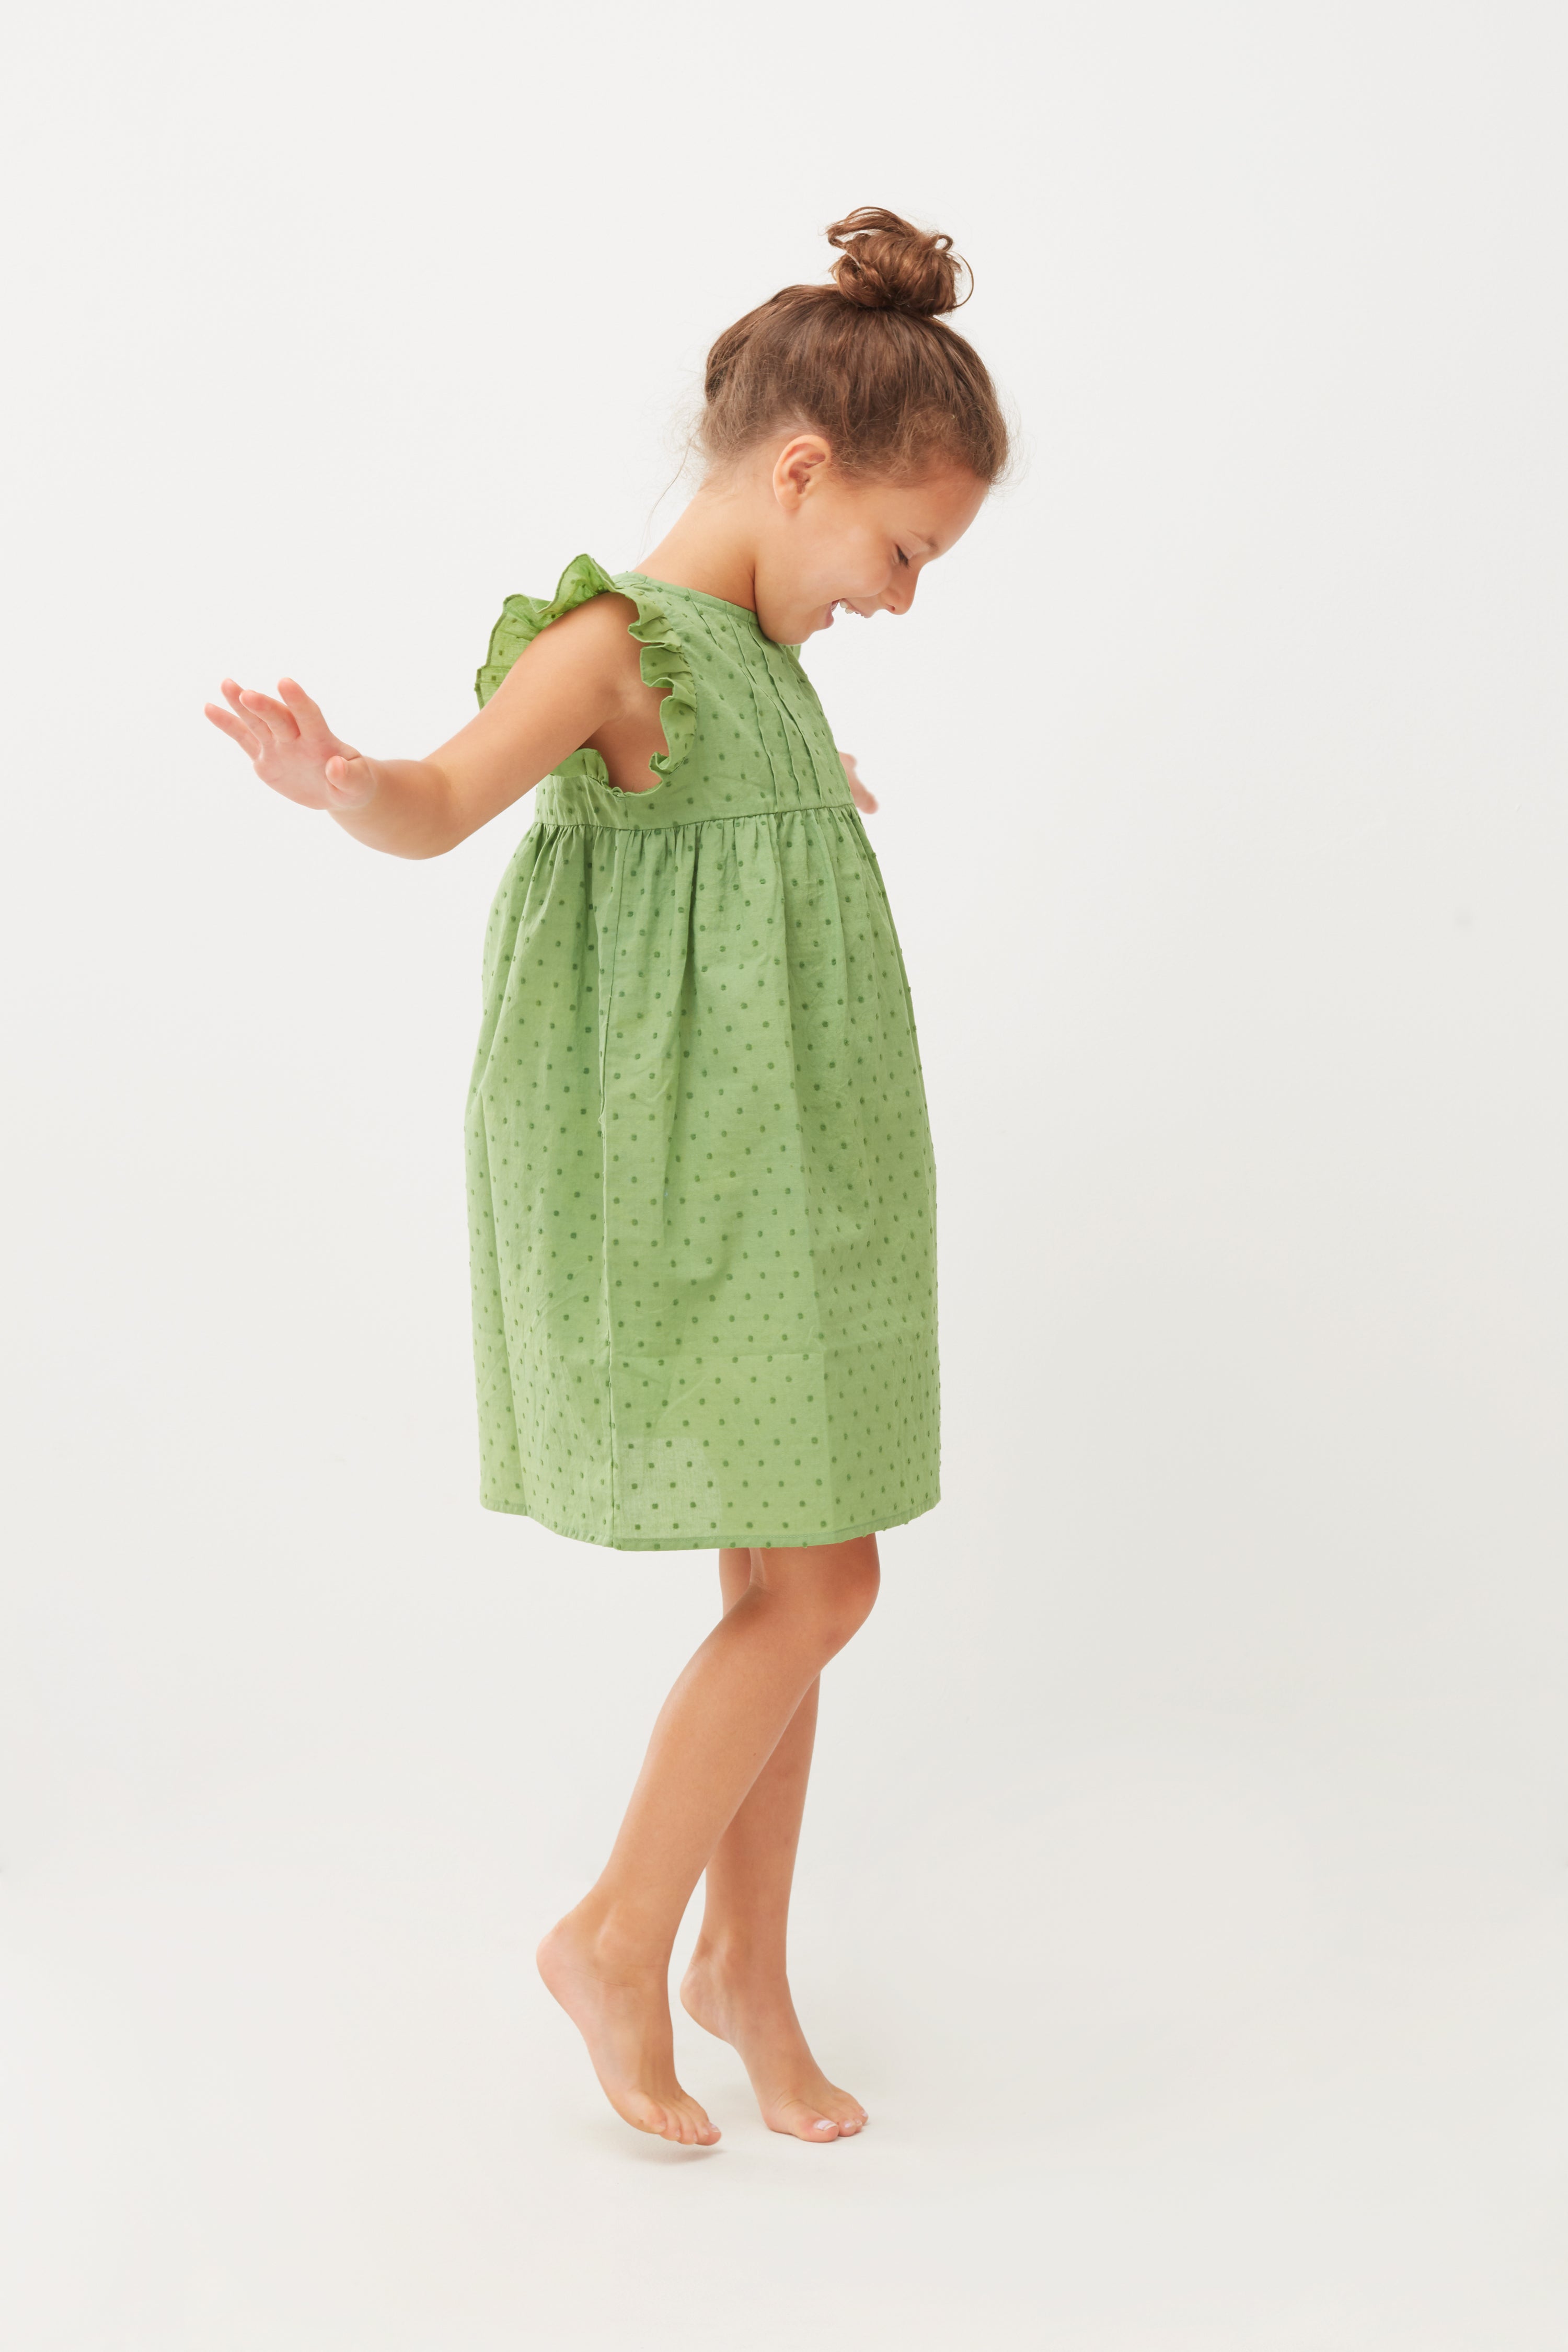 Girls Green Dots Cotton Dress